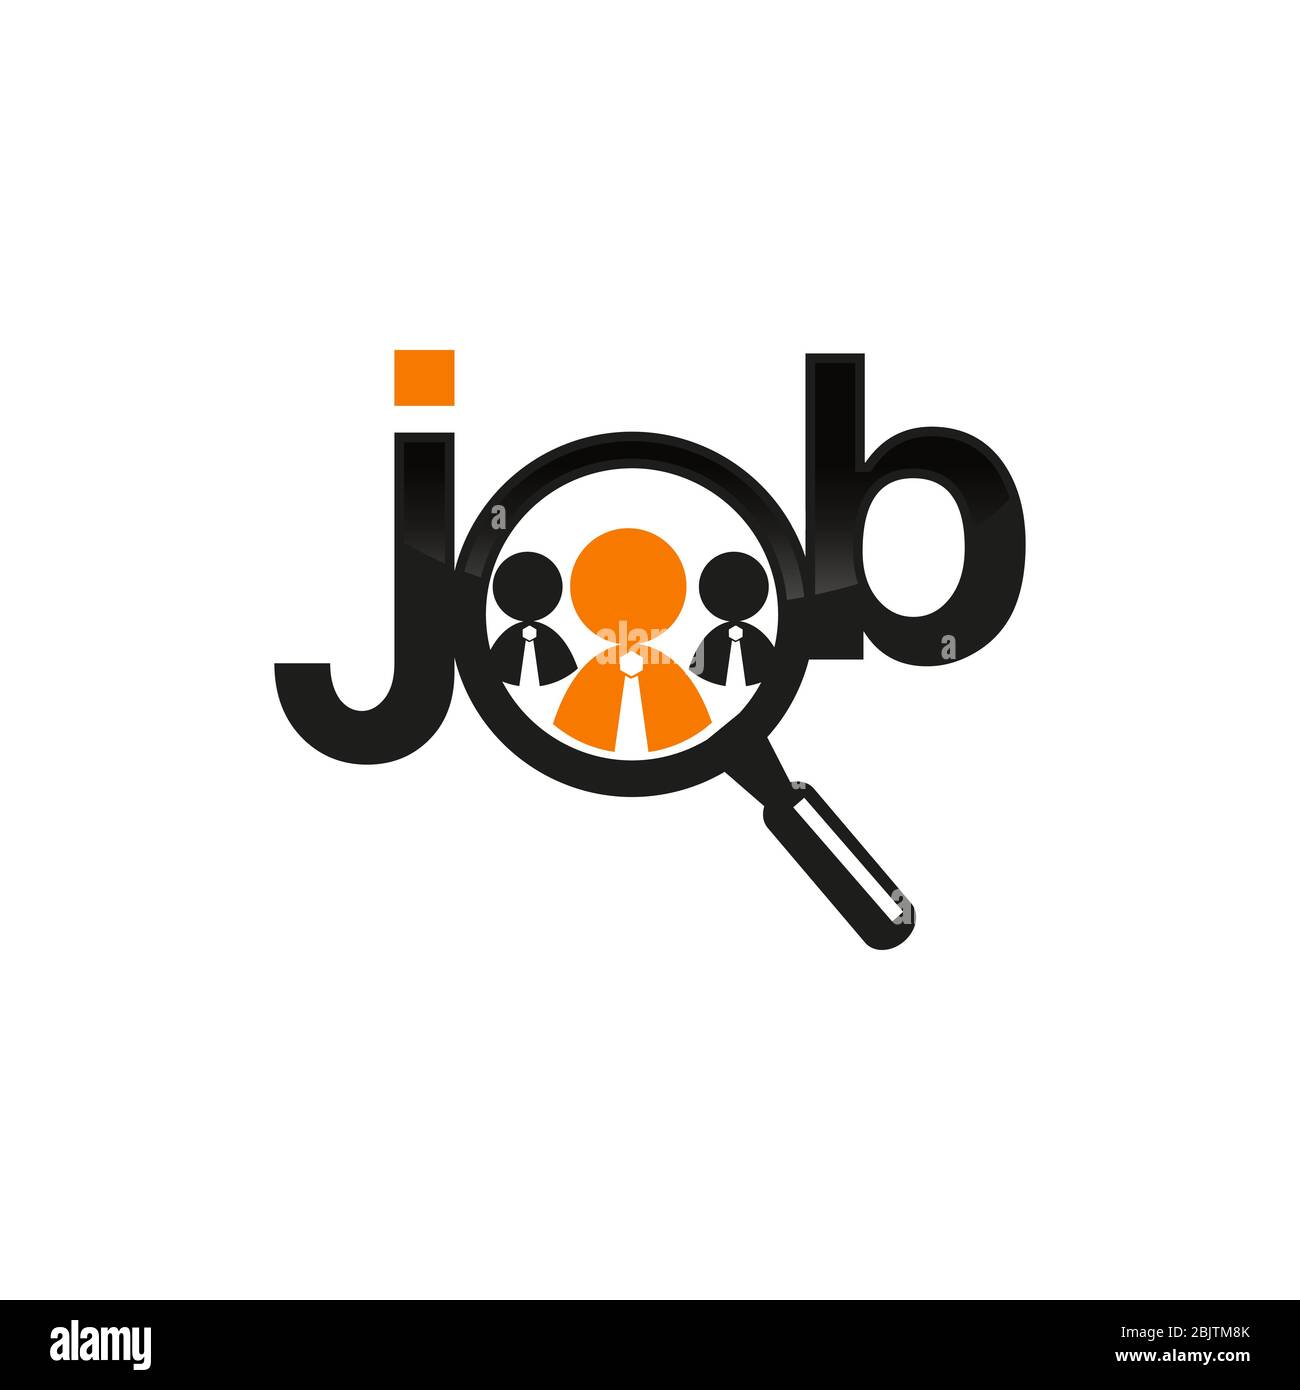 شكرا لكم أستعد تعويضات job logo - countingonsilence.com